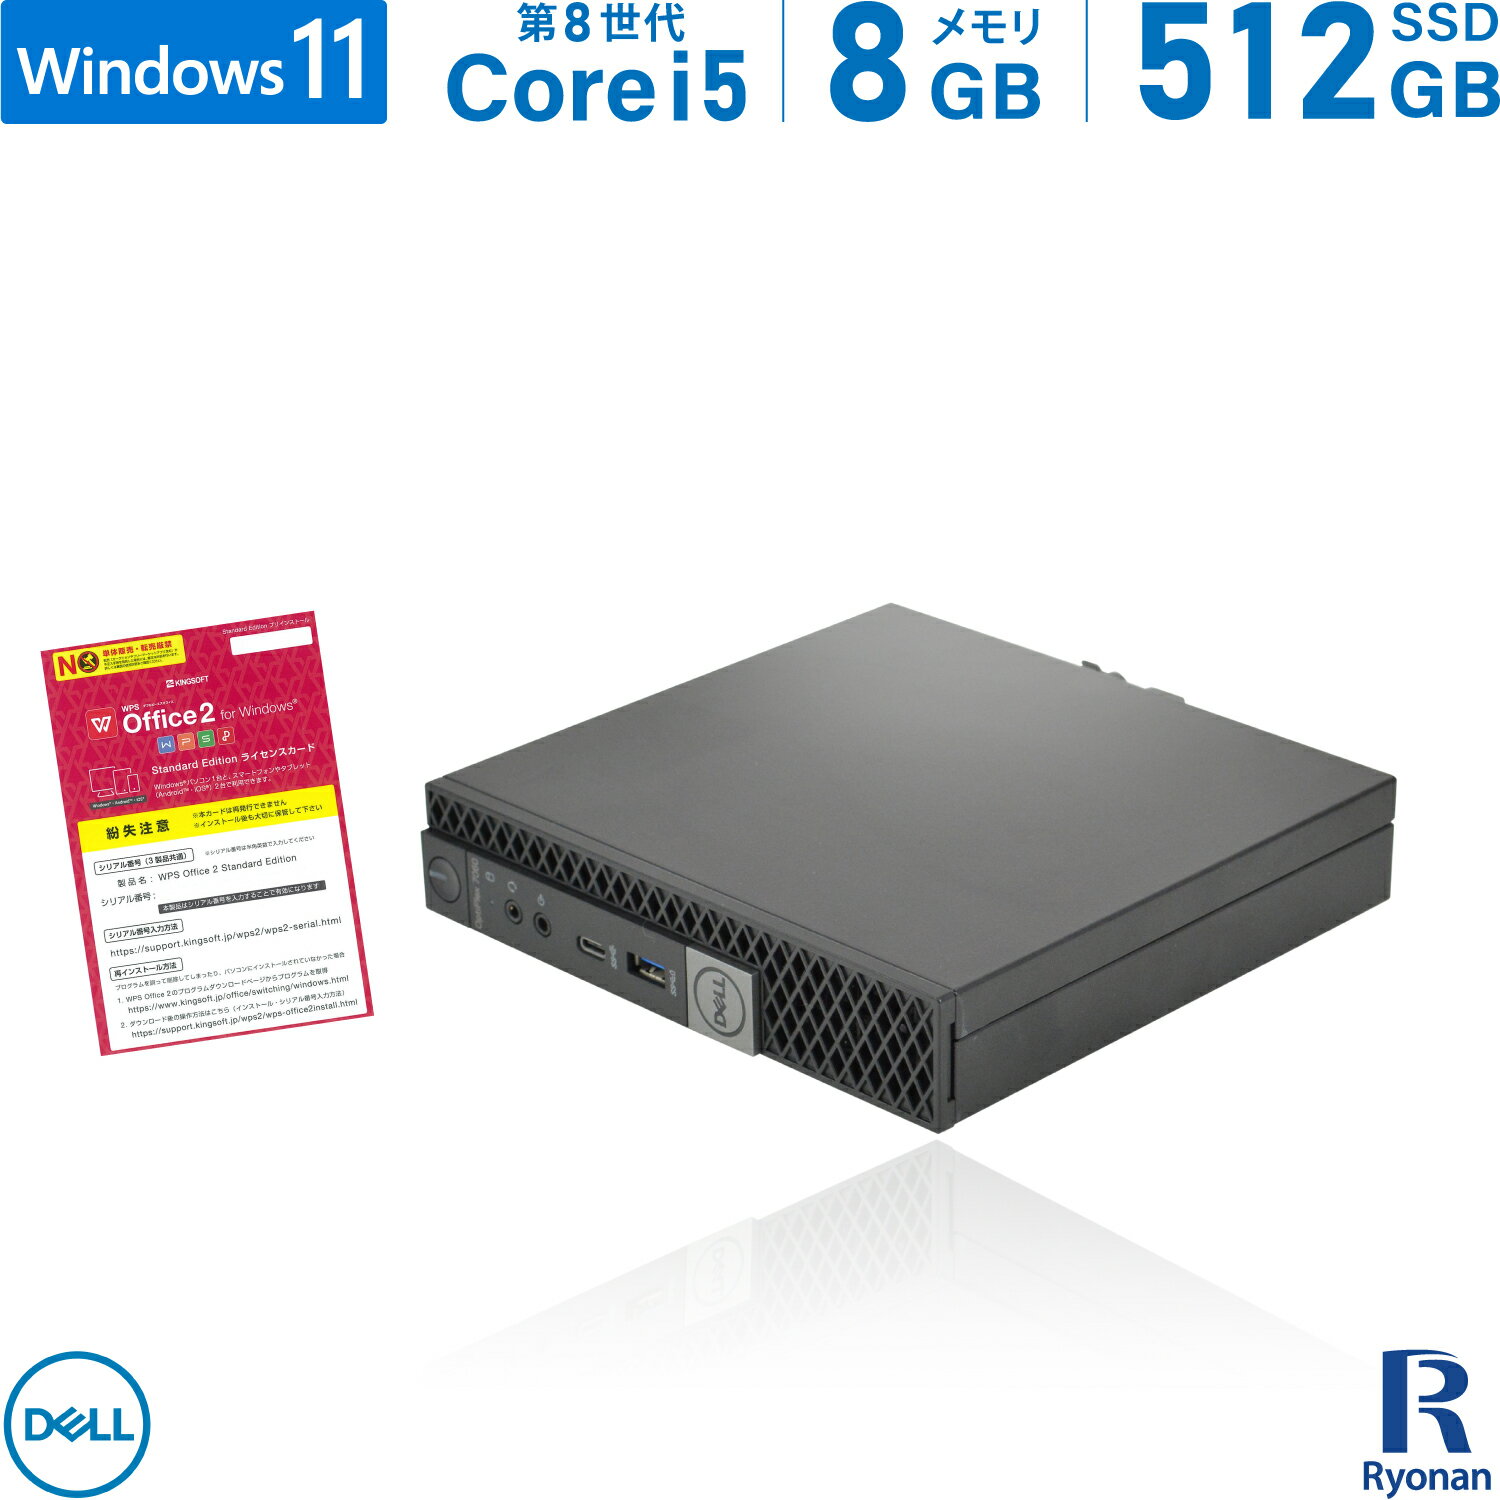 【スーパーSALE 10%OFF】DELL OptiPlex 7060 micro 第8世代 Core i5 メモリ:8GB 新品SSD:512GB デスクトップパソコン USB 3.0 Type-C Office付 パソコン デスクトップ 中古パソコン Windows 11…